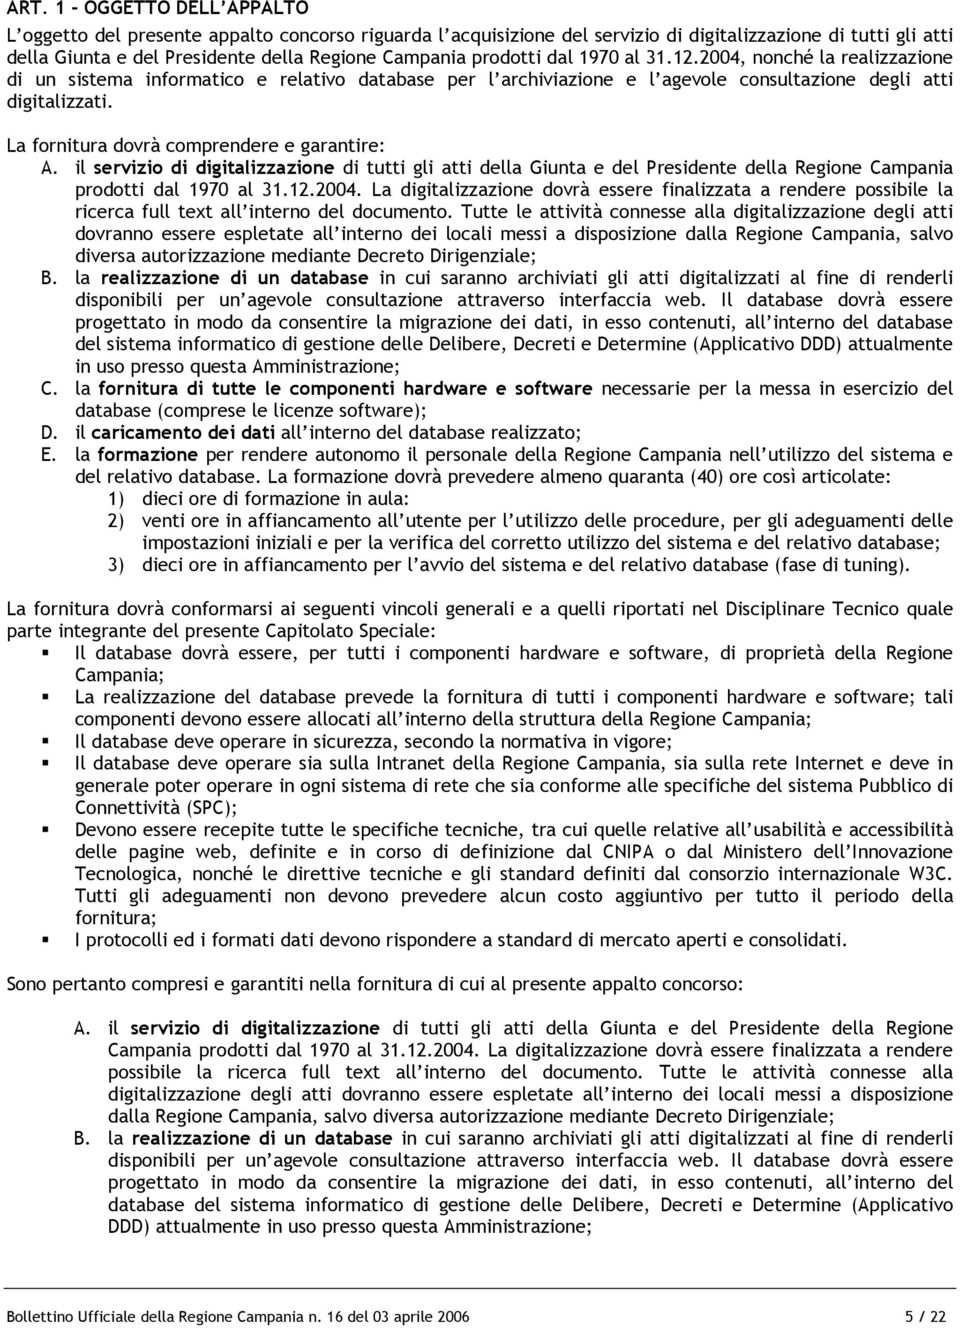 La fornitura dovrà comprendere e garantire: A. il servizio di digitalizzazione di tutti gli atti della Giunta e del Presidente della Regione Campania prodotti dal 1970 al 31.12.2004.